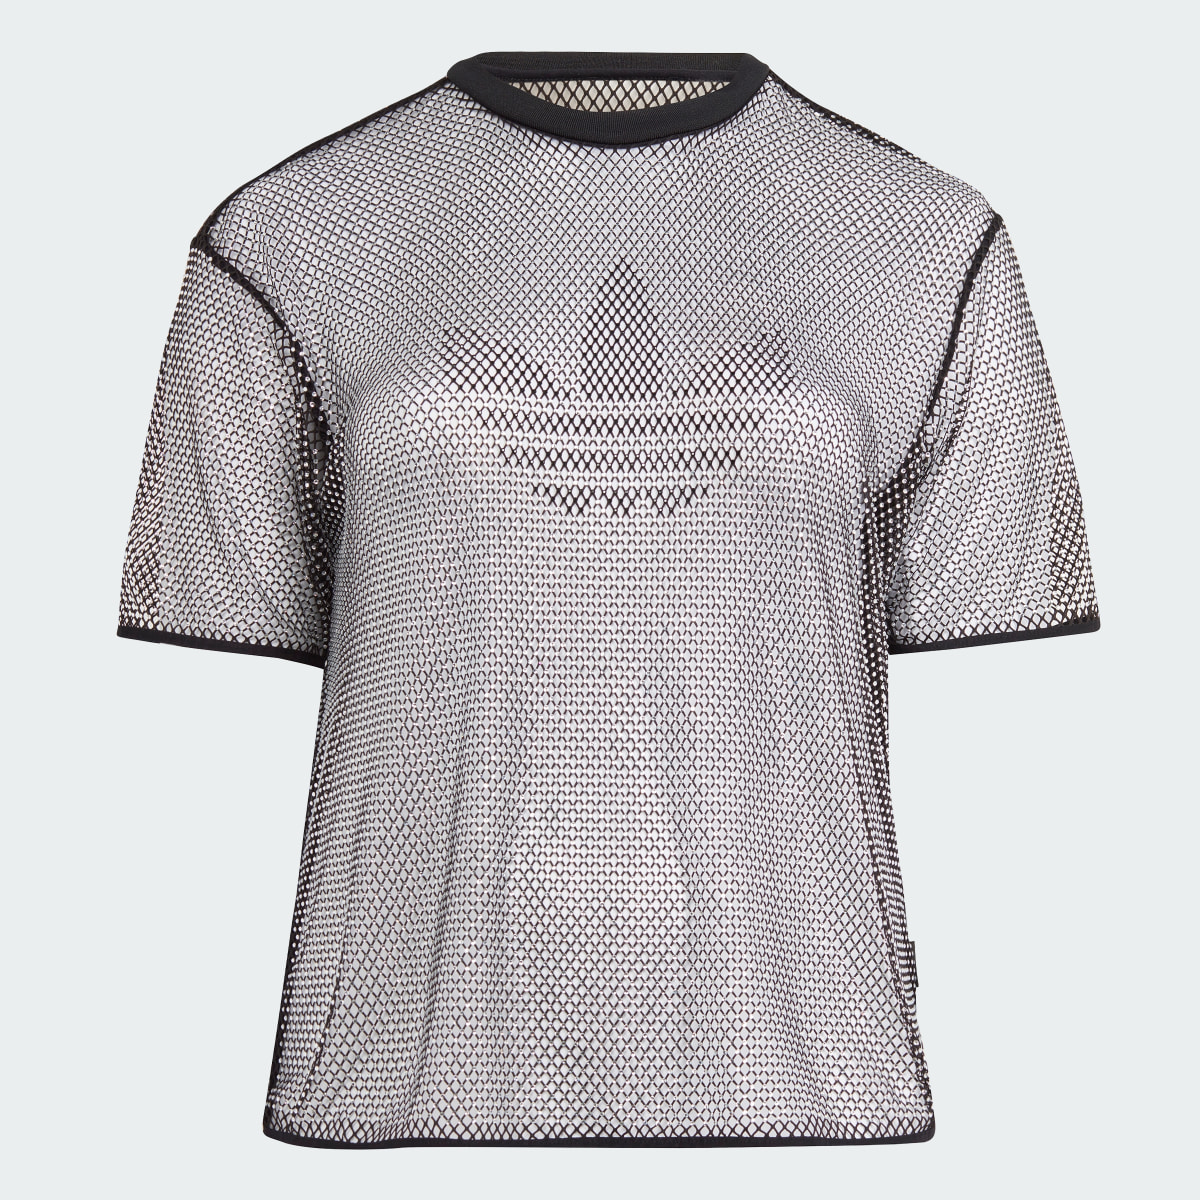 Adidas T-shirt com Brilhantes Adilenium. 5